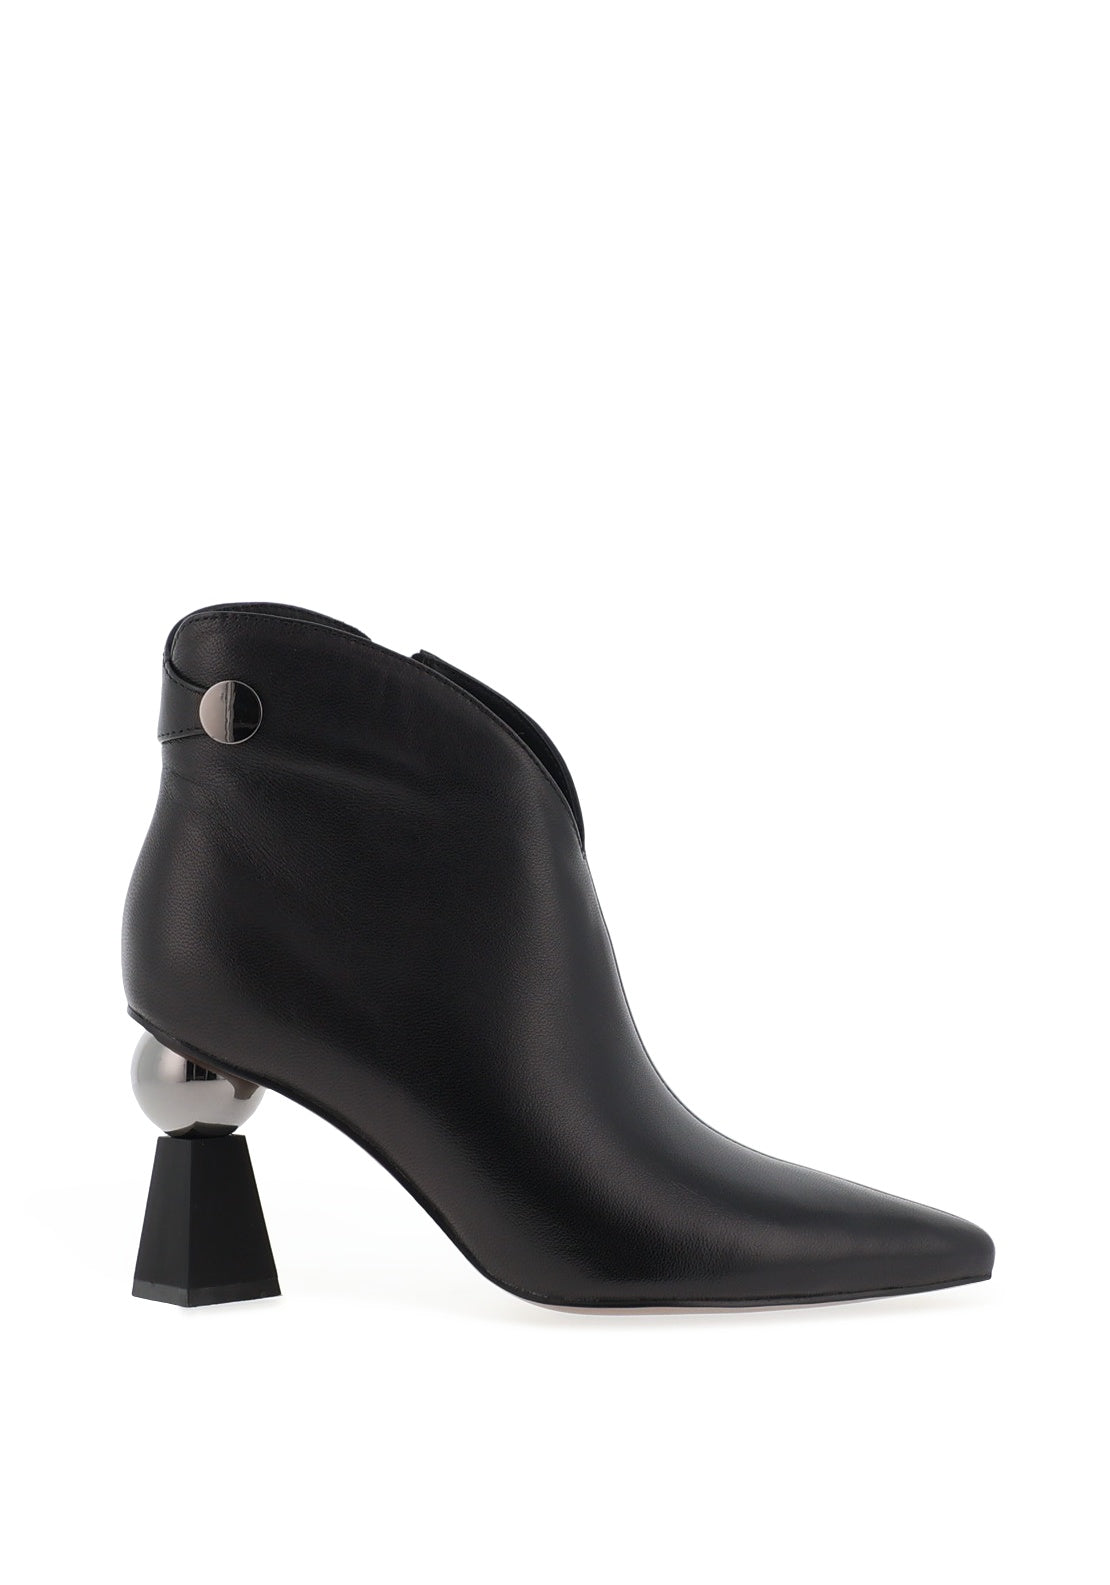 Loretta Vitale Leather Geometric Heeled Boots, Black - McElhinneys